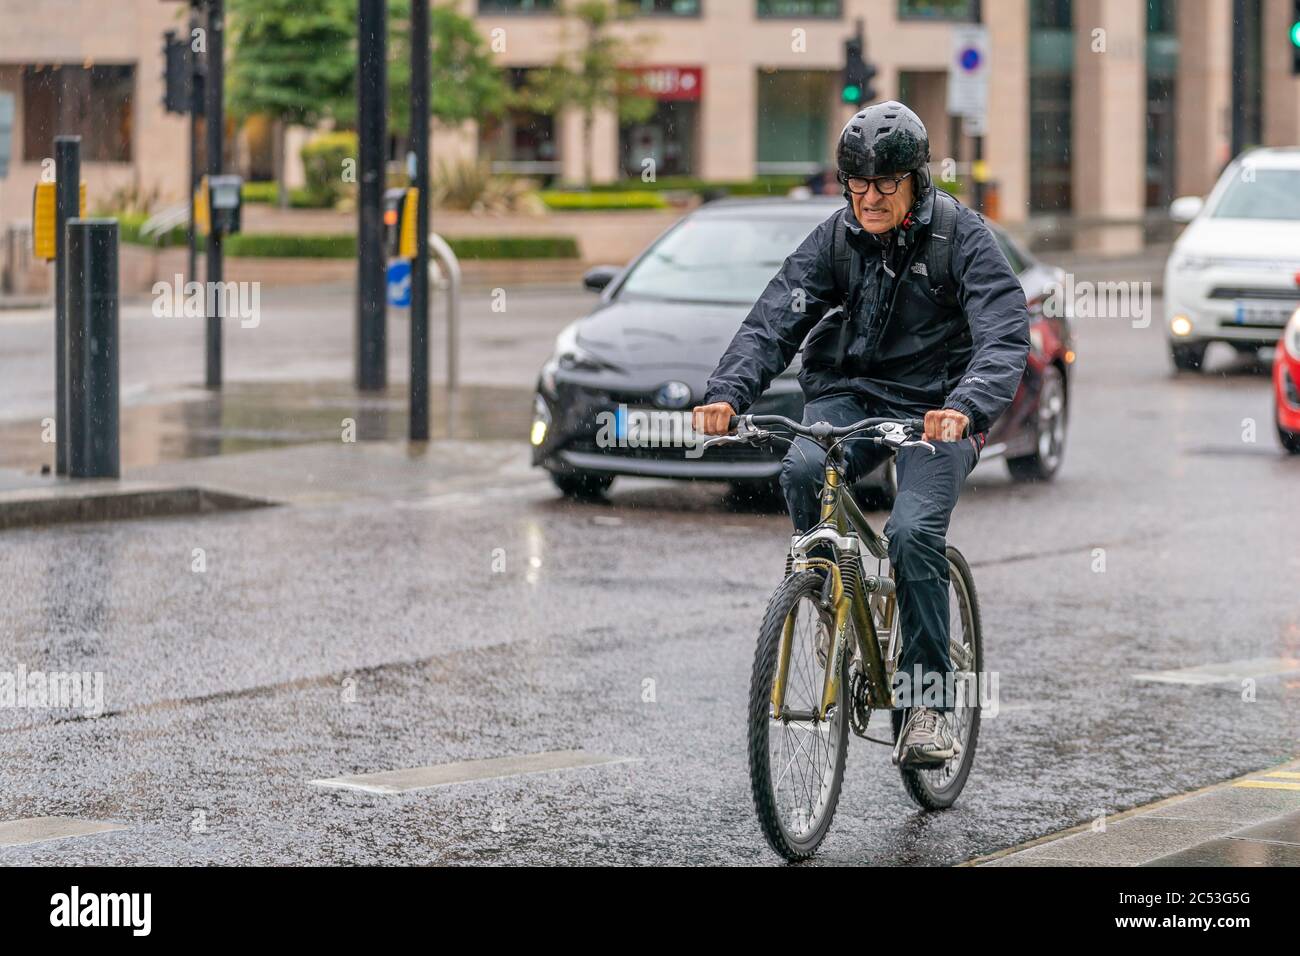 LONDON, ENGLAND - 10. JUNI 2020: Ein alter Radler, der während der COVID-19 PAN seine Macht zeigt, wurde an einem nieseligen Tag in Holborn, London, im Regen gefangen Stockfoto